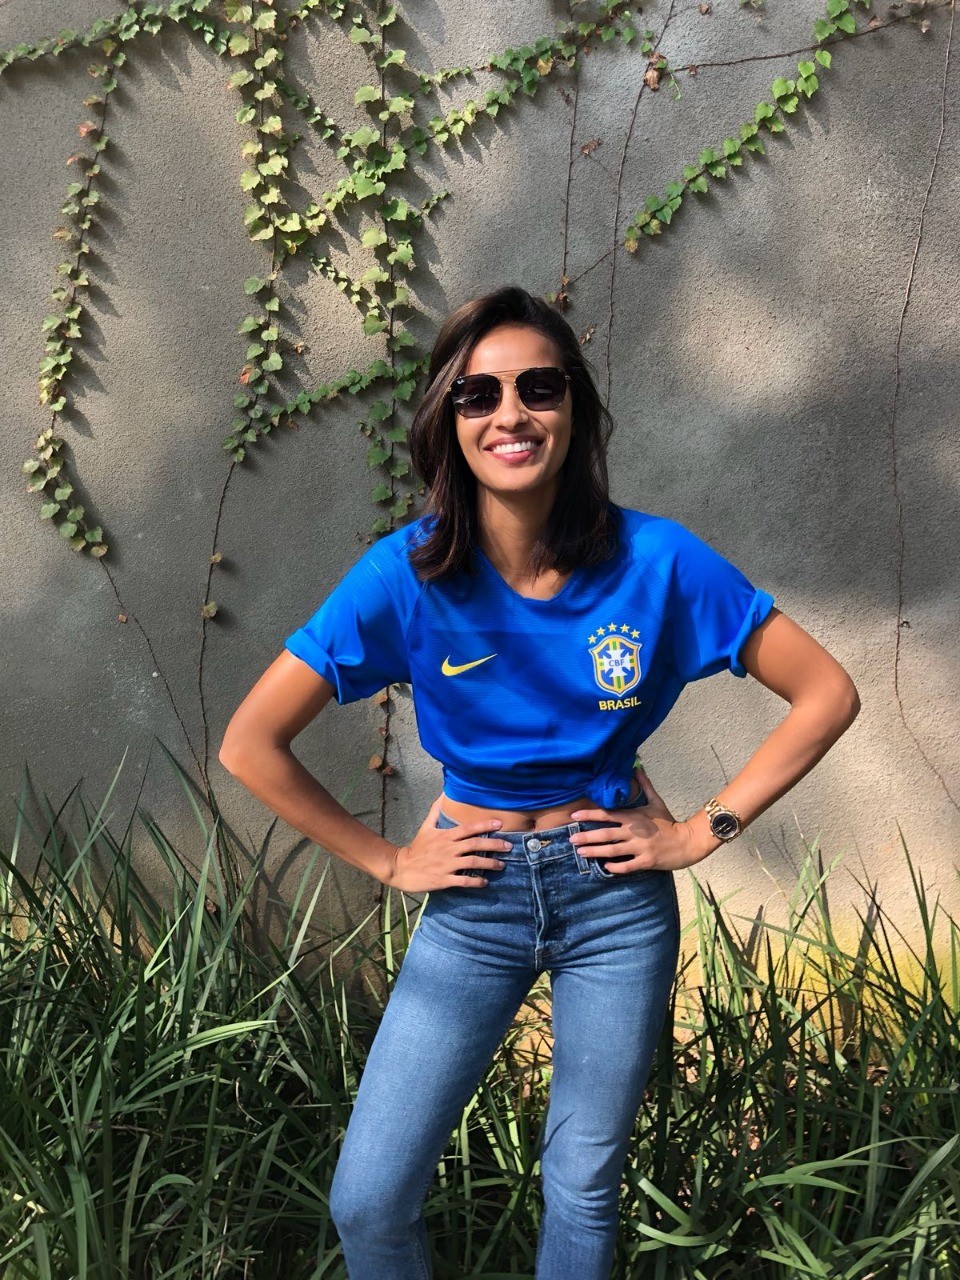 EXCLUSIVO: a top Gracie Carvalho também já está pronta para assistir ao jogo (Foto: divul)